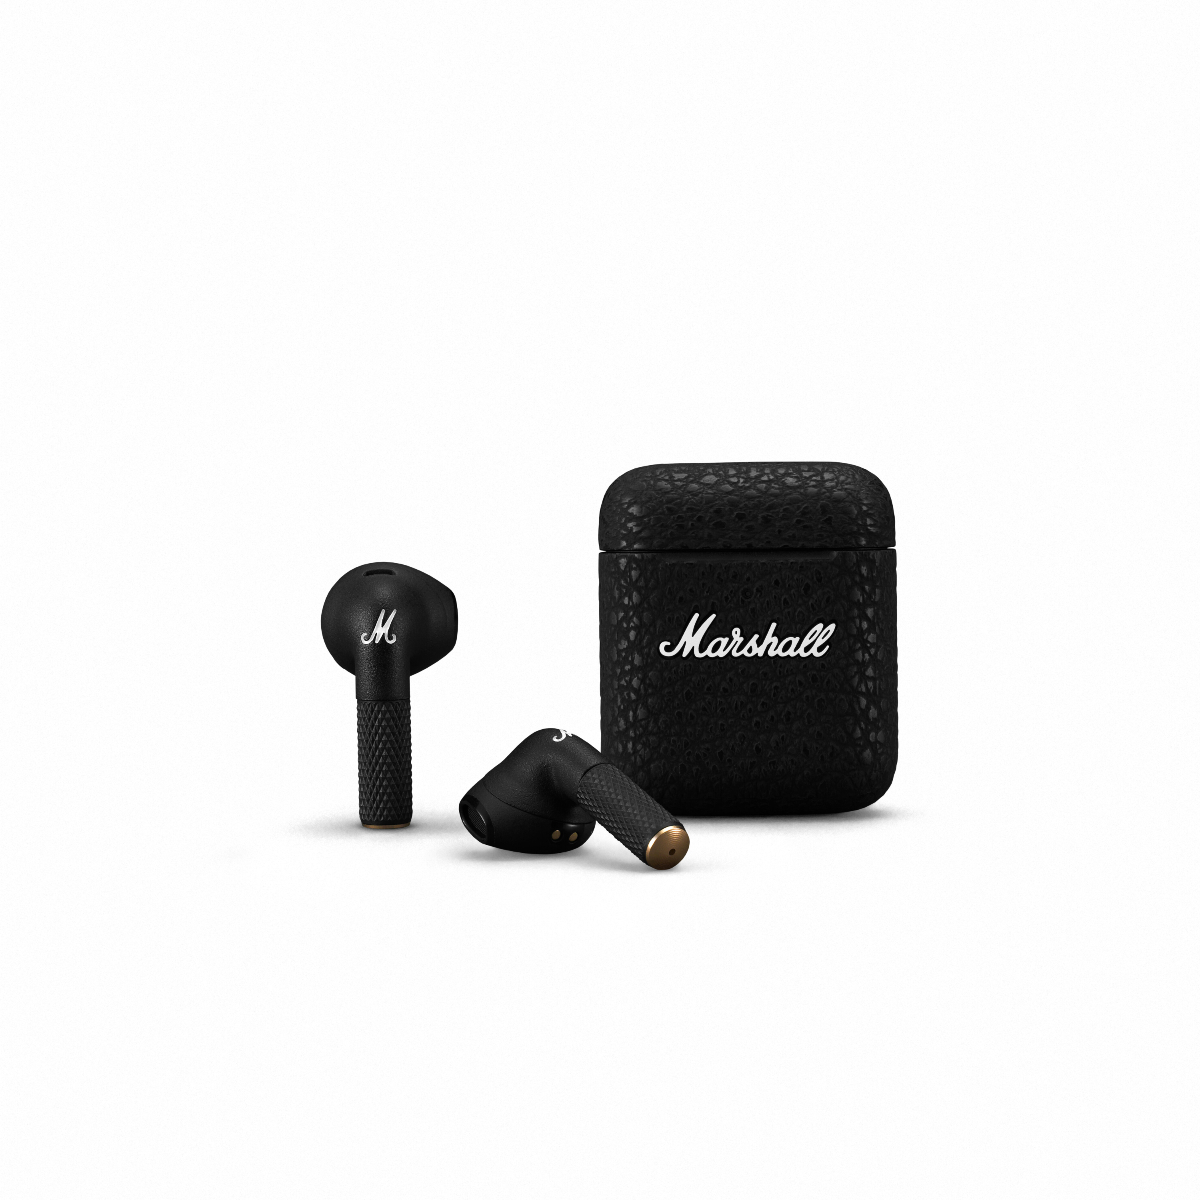 Marshall Minor III True Wireless earphone (Black), Black, large image number 1